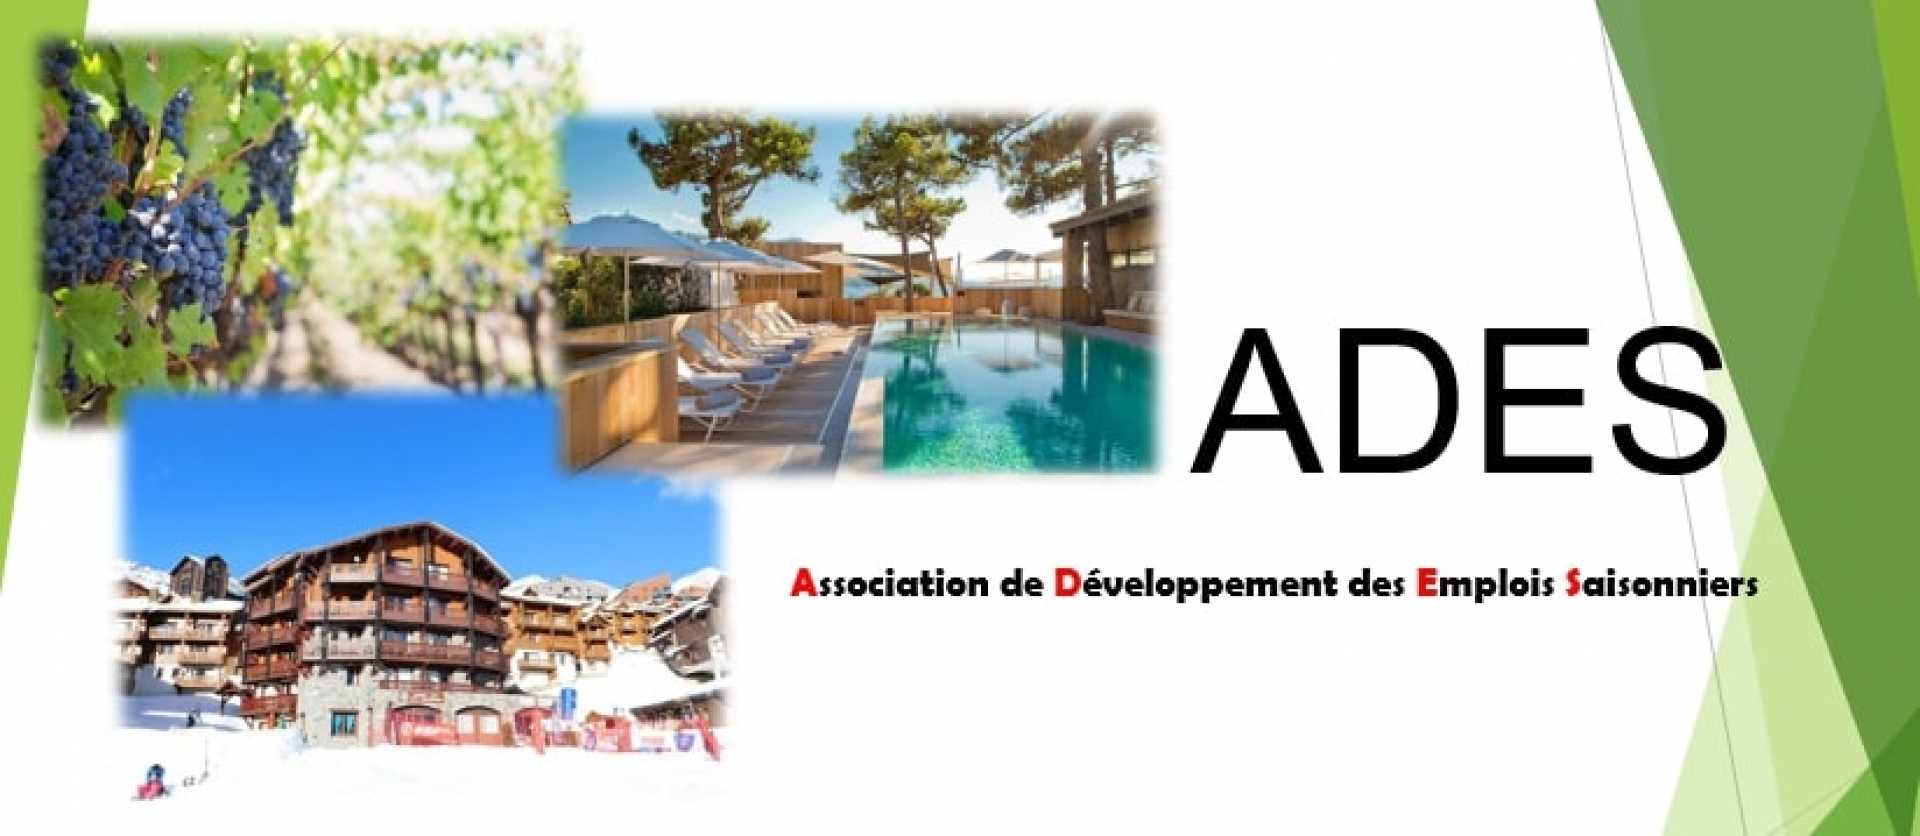 Association de Développement des Emplois Saisonniers (ADES)